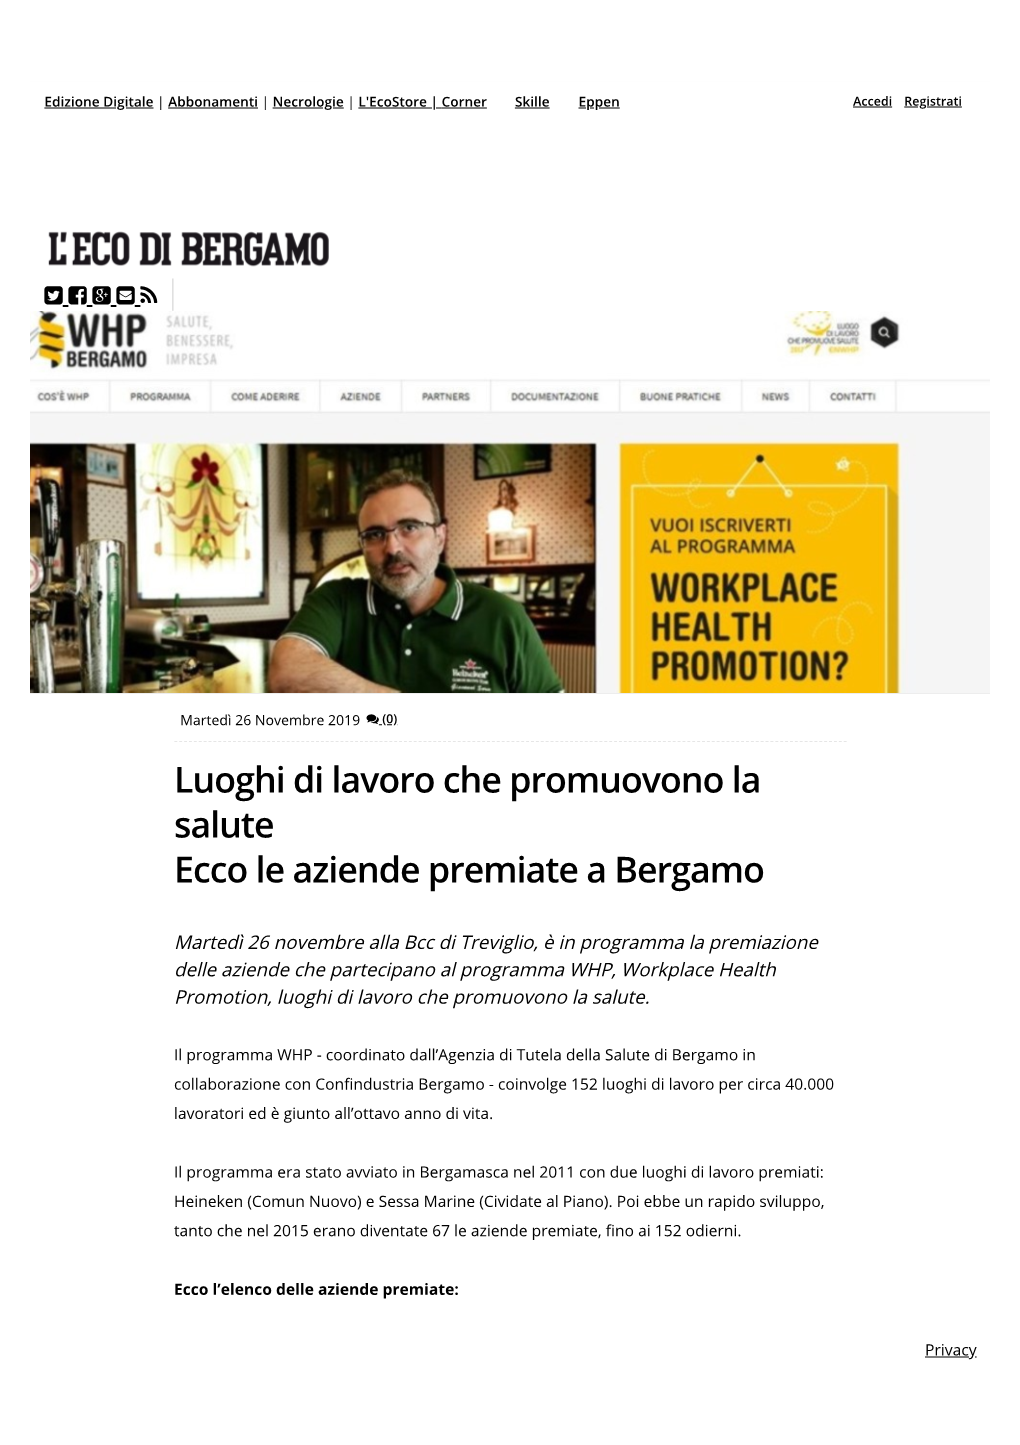 Luoghi Di Lavoro Che Promuovono La Salute Ecco Le Aziende Premiate a Bergamo